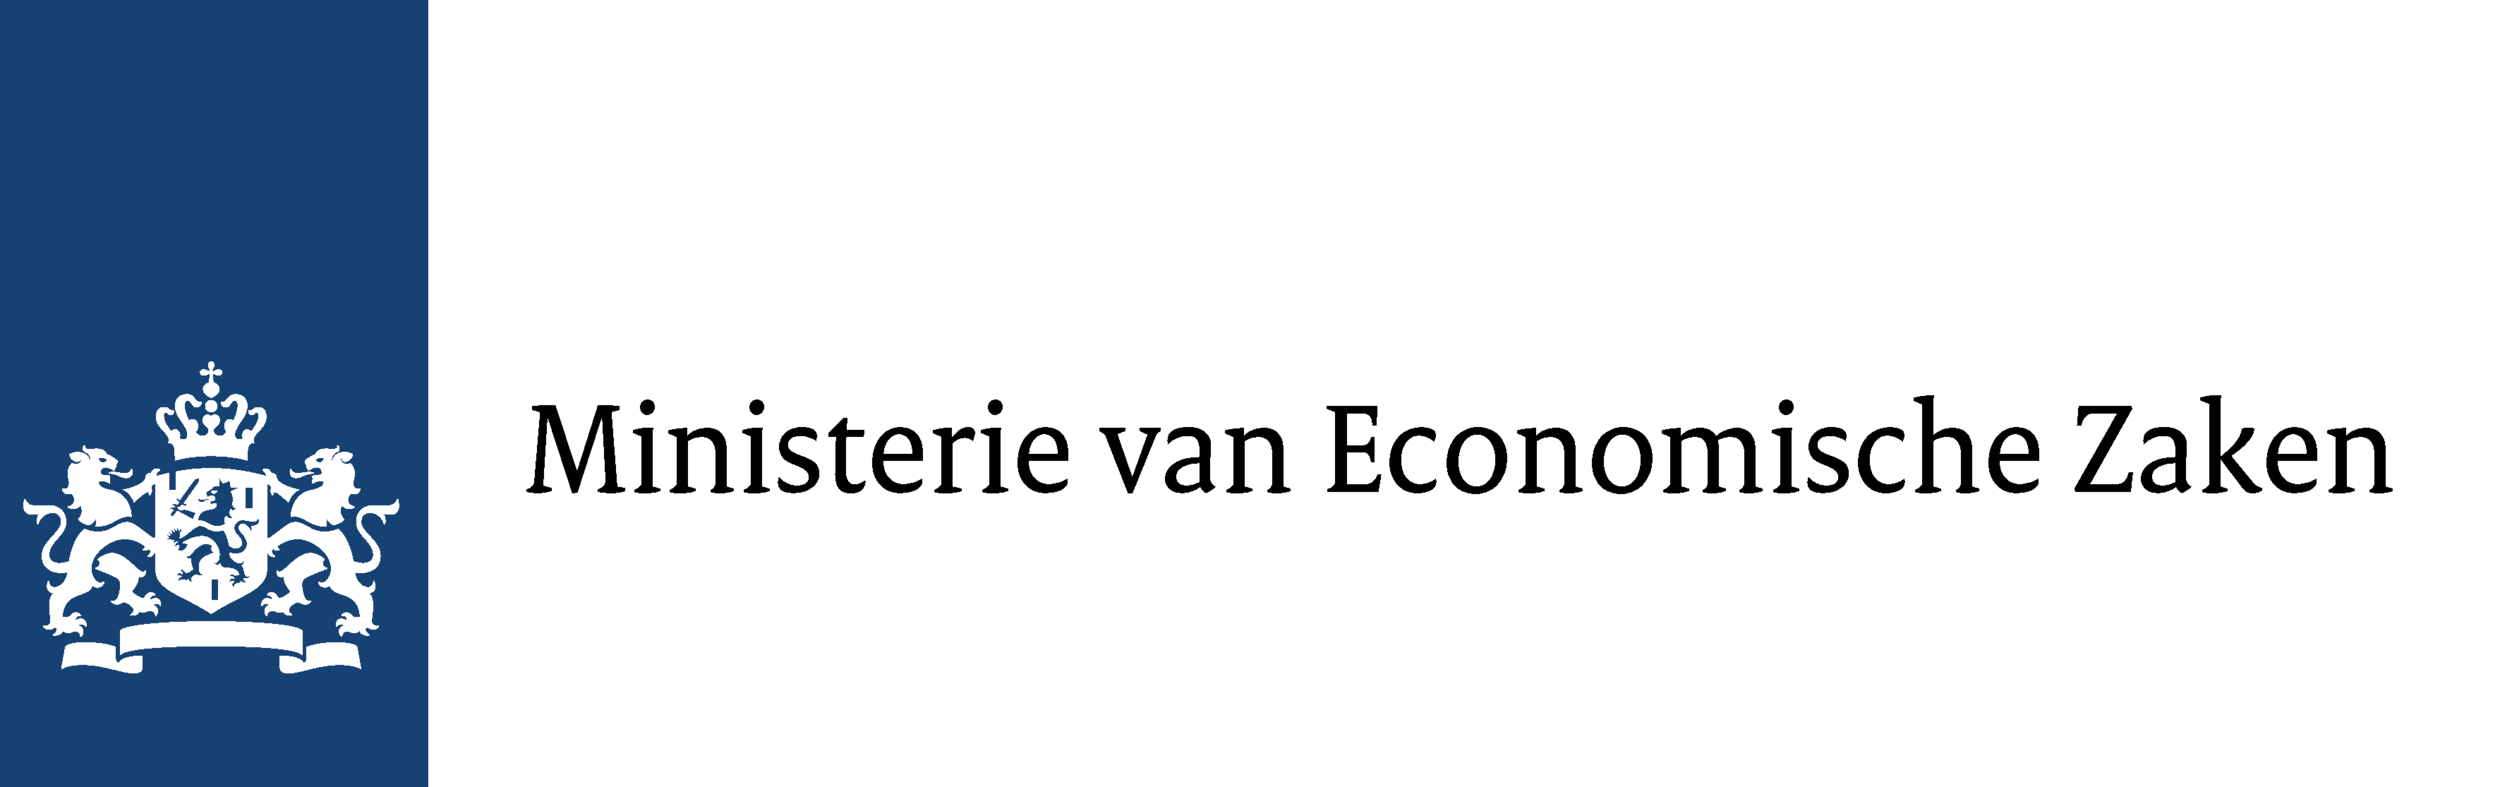 Ministerie_van_Economische_Zaken_Logo.png